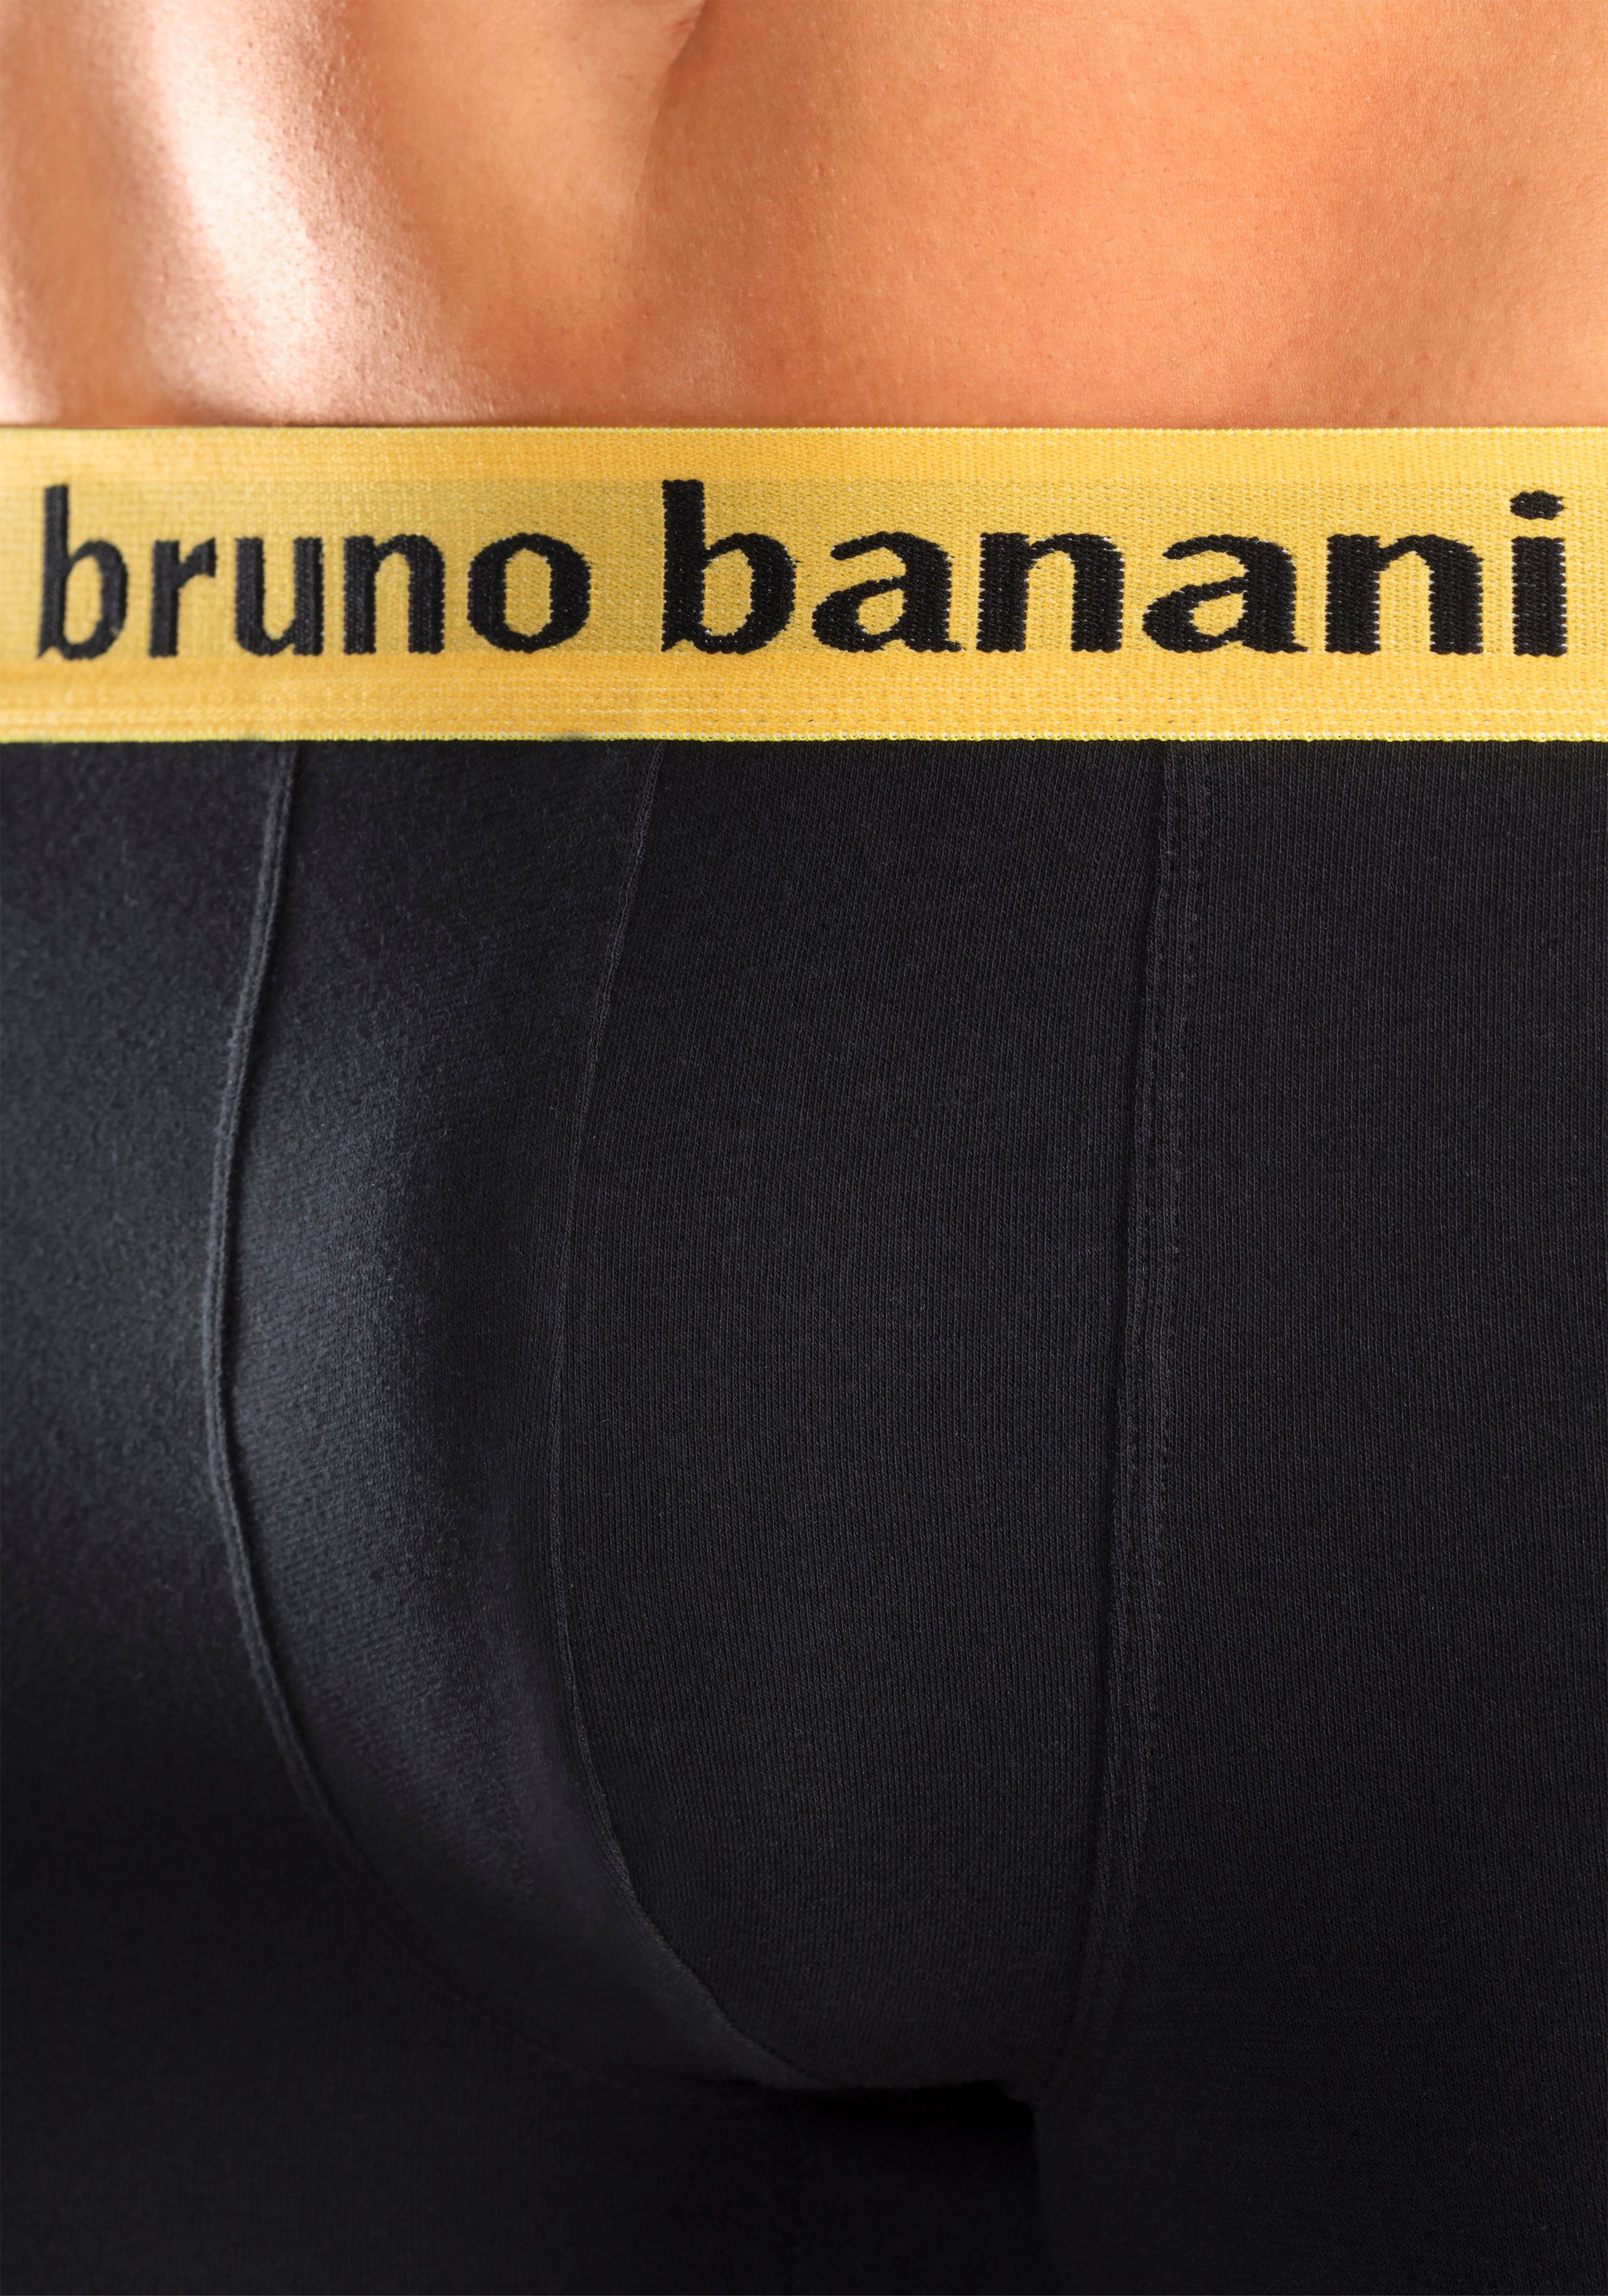 Banani Boxer schwarz-lila Bruno farbigen Marken-Schriftzug schwarz-orange, 4-St) am mit schwarz-türkis, Bündchen schwarz-gelb, (Packung,